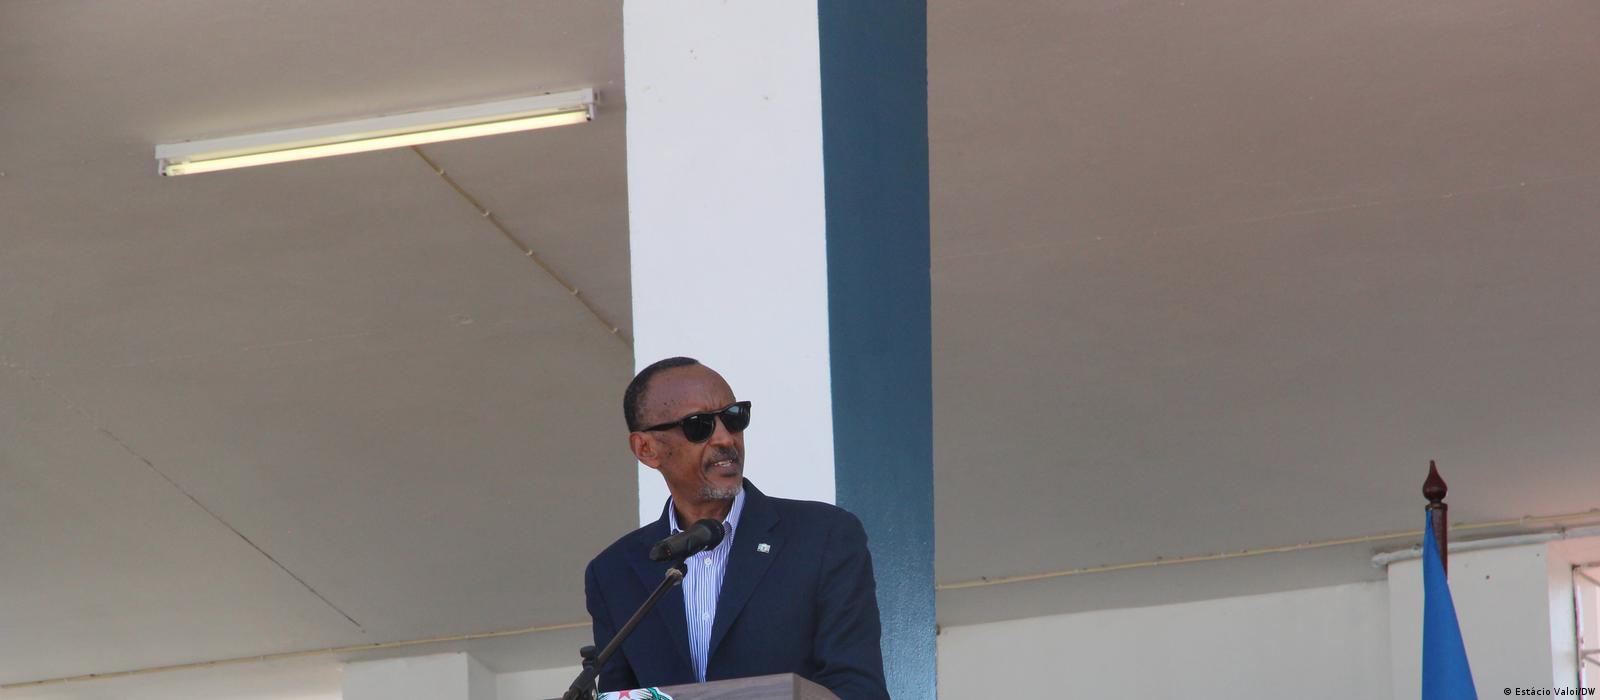 Protagonismo do Ruanda é ameaça à soberania?